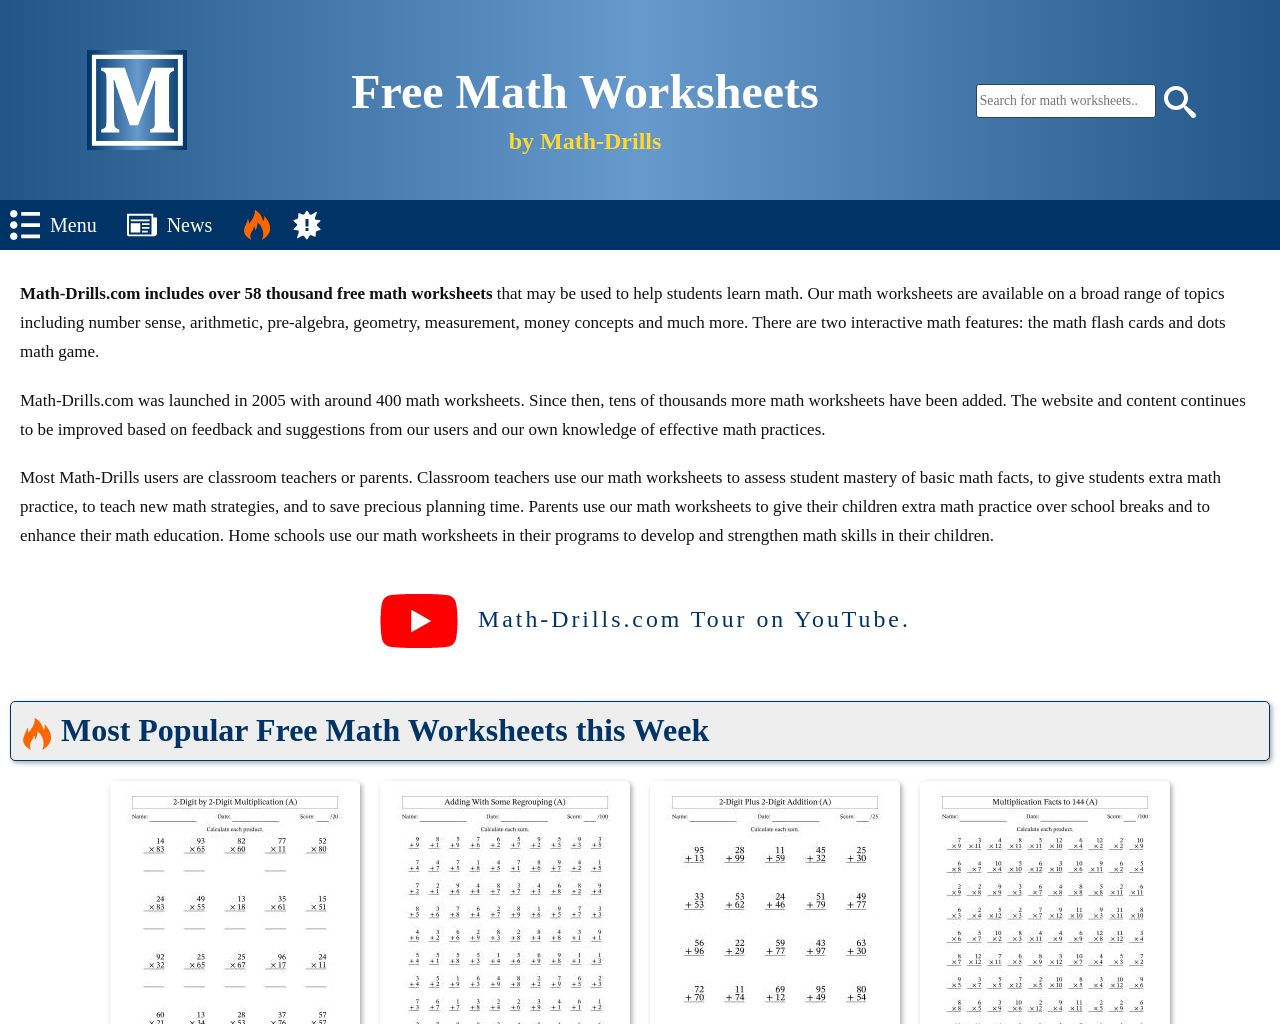 www.math-drills.com